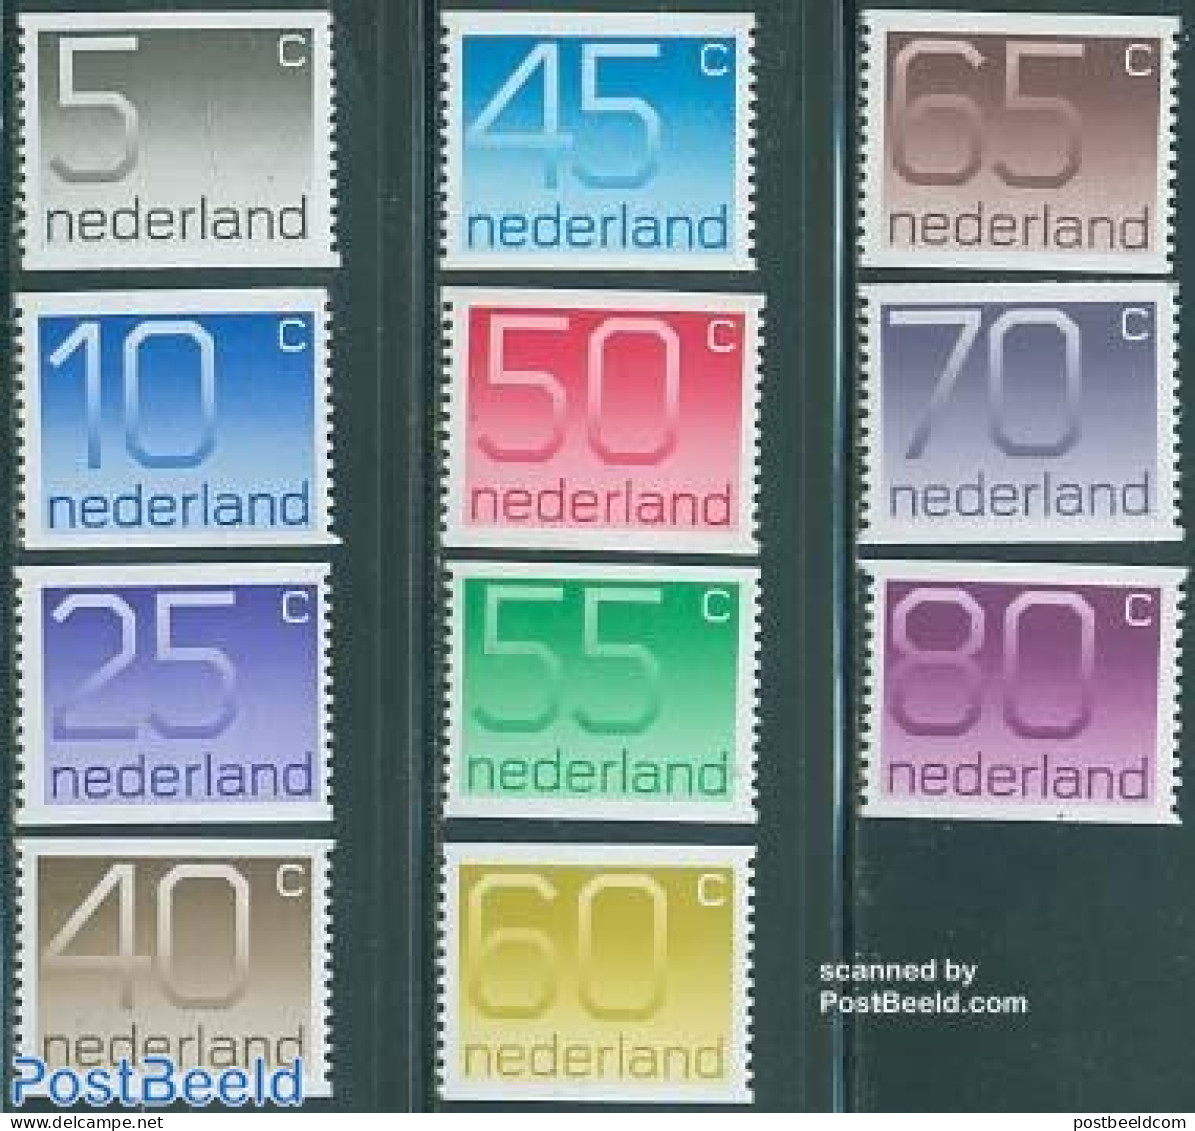 Netherlands 1976 Definitives, Coil Stamps 11v, Mint NH - Ongebruikt